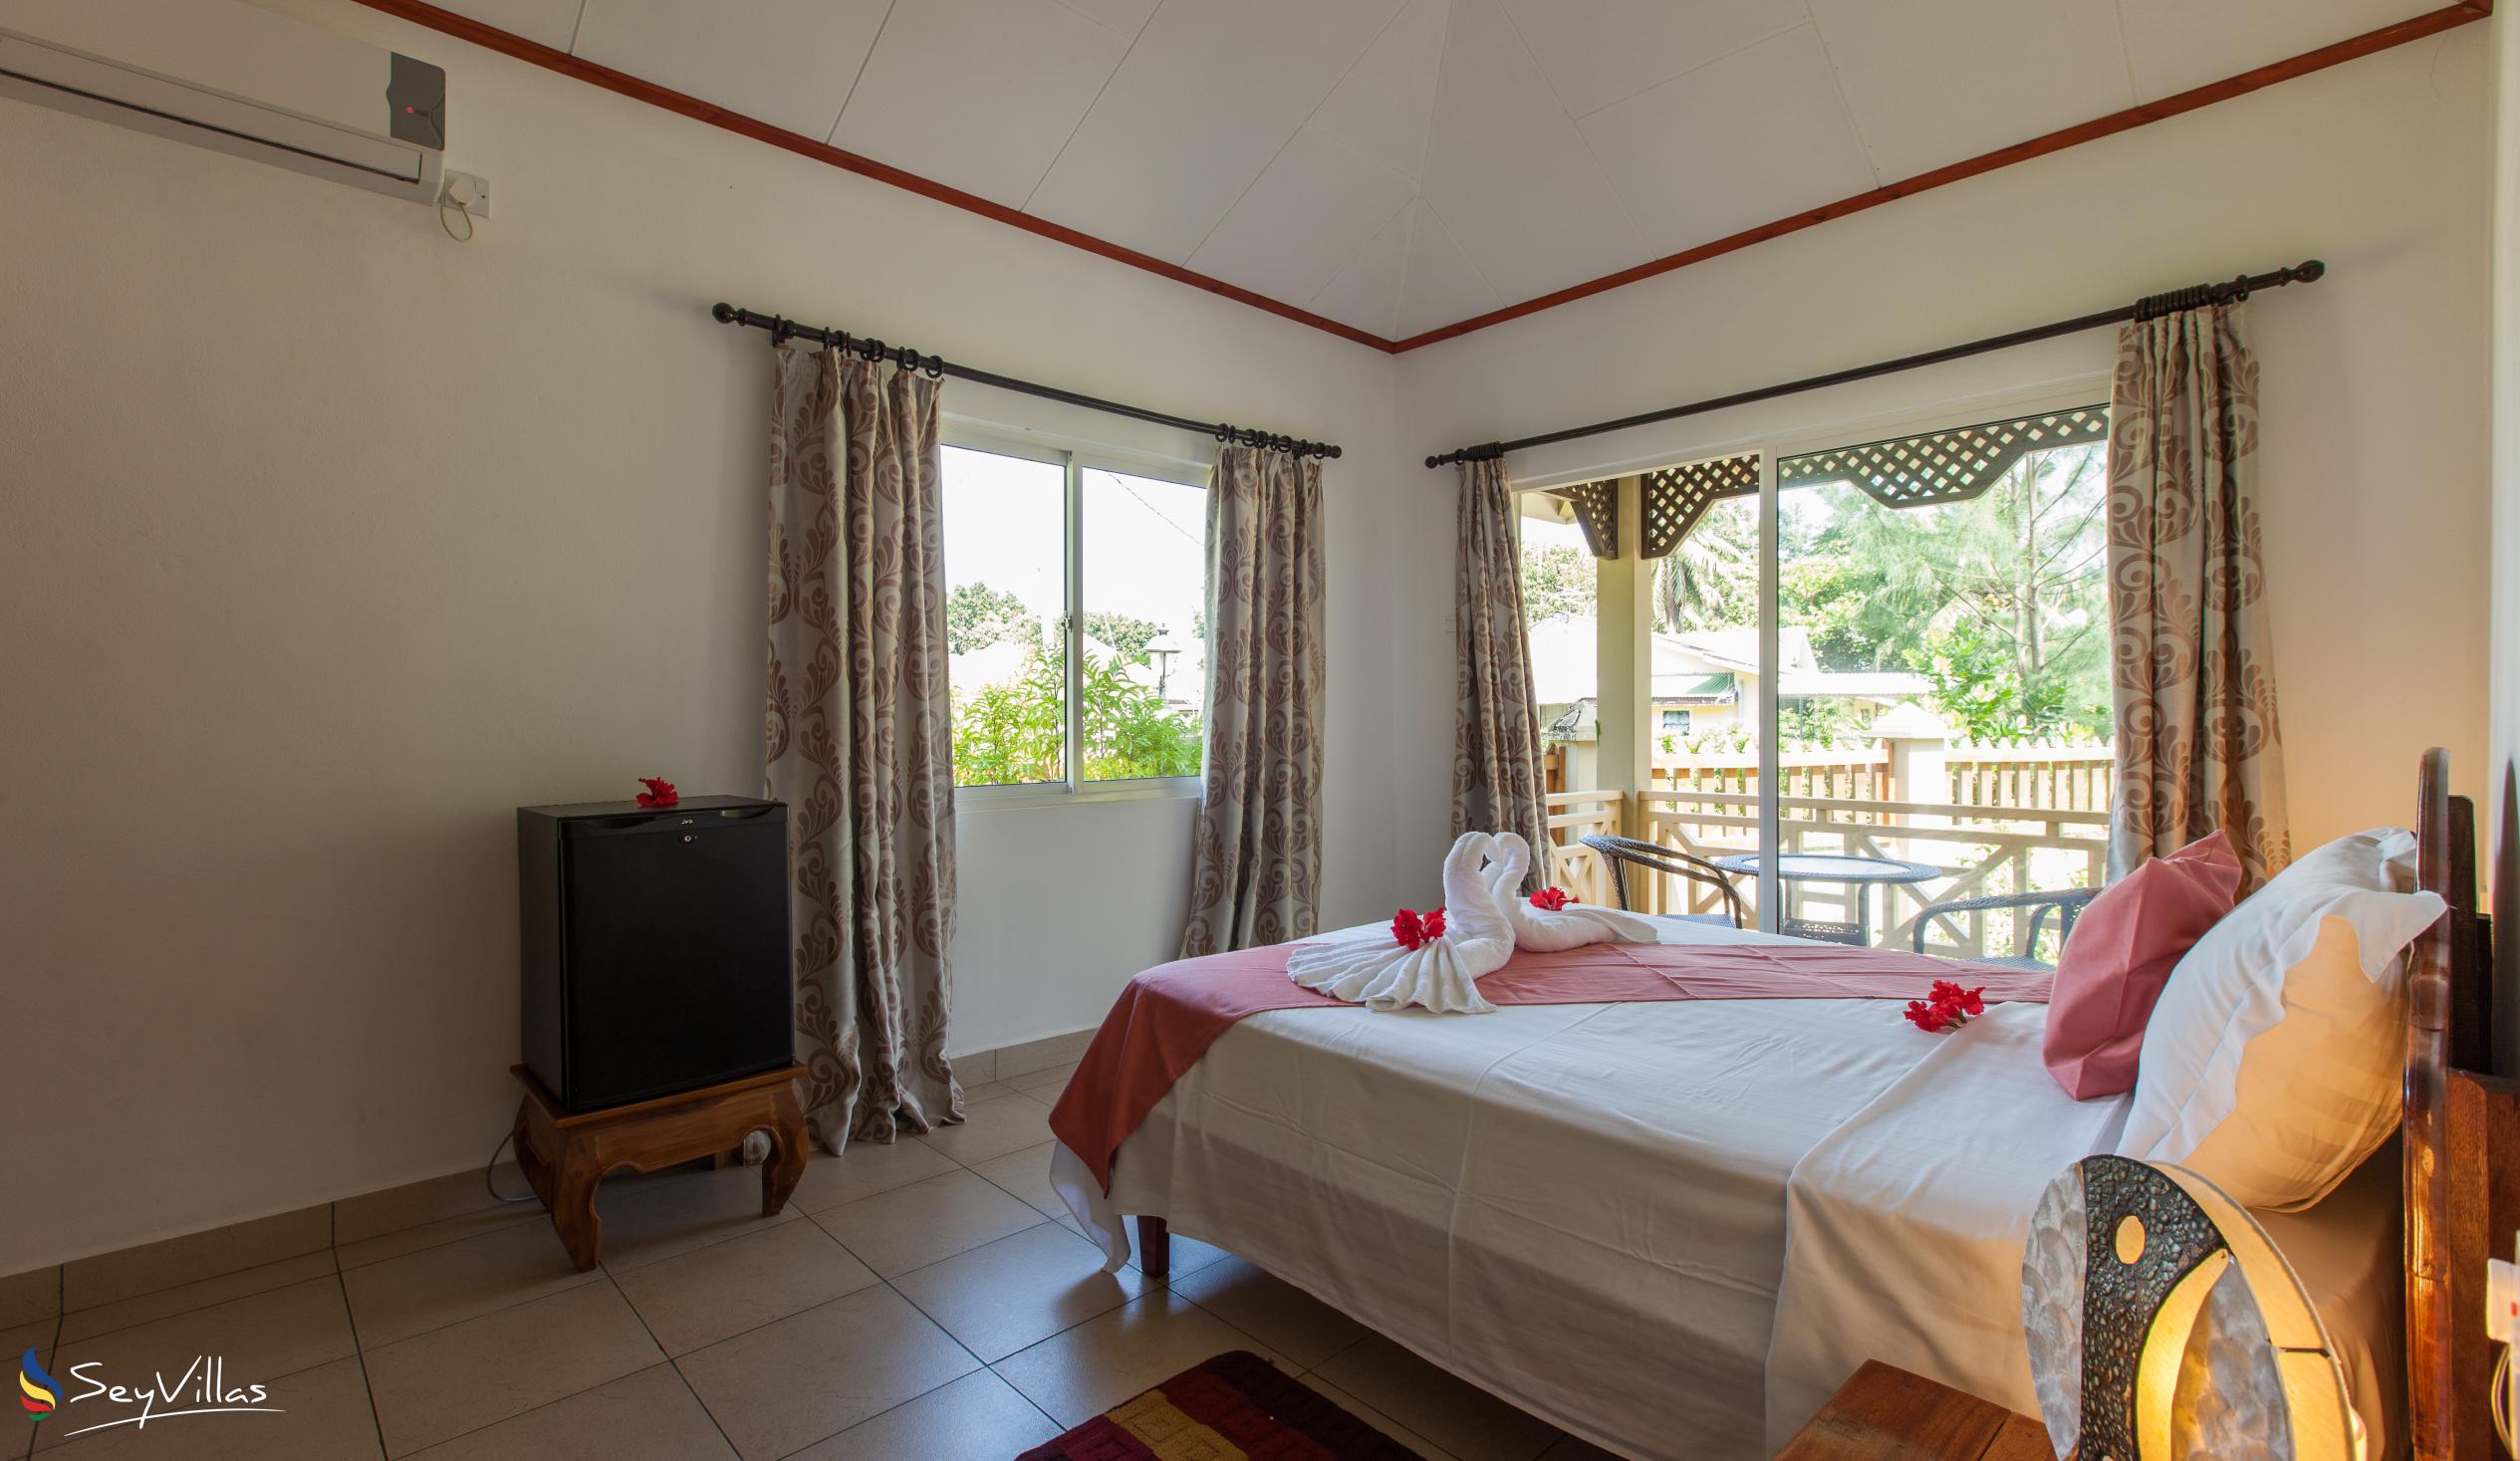 Foto 57: Hostellerie La Digue - Chalet mit 2 Schlafzimmern - La Digue (Seychellen)